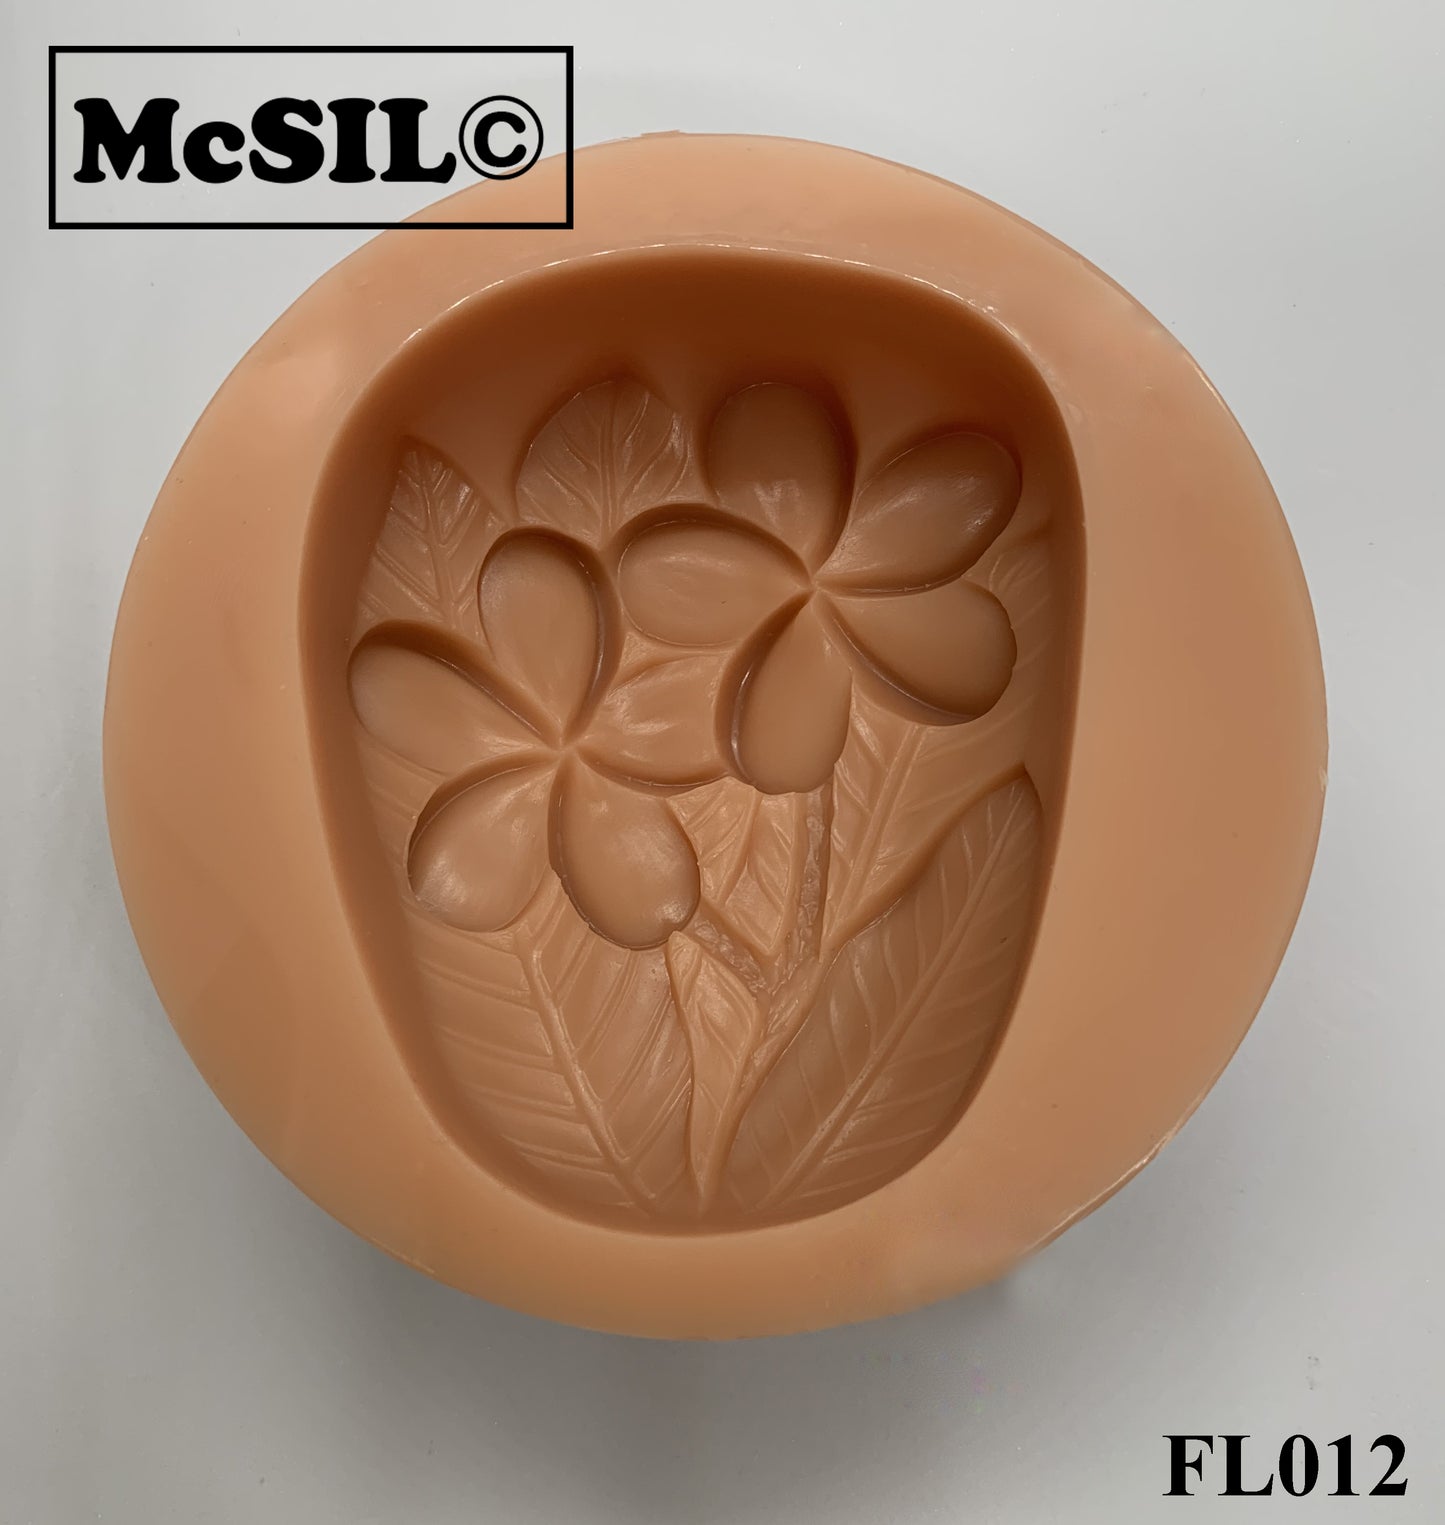 Silicone Mold - FL012 - Plumeria